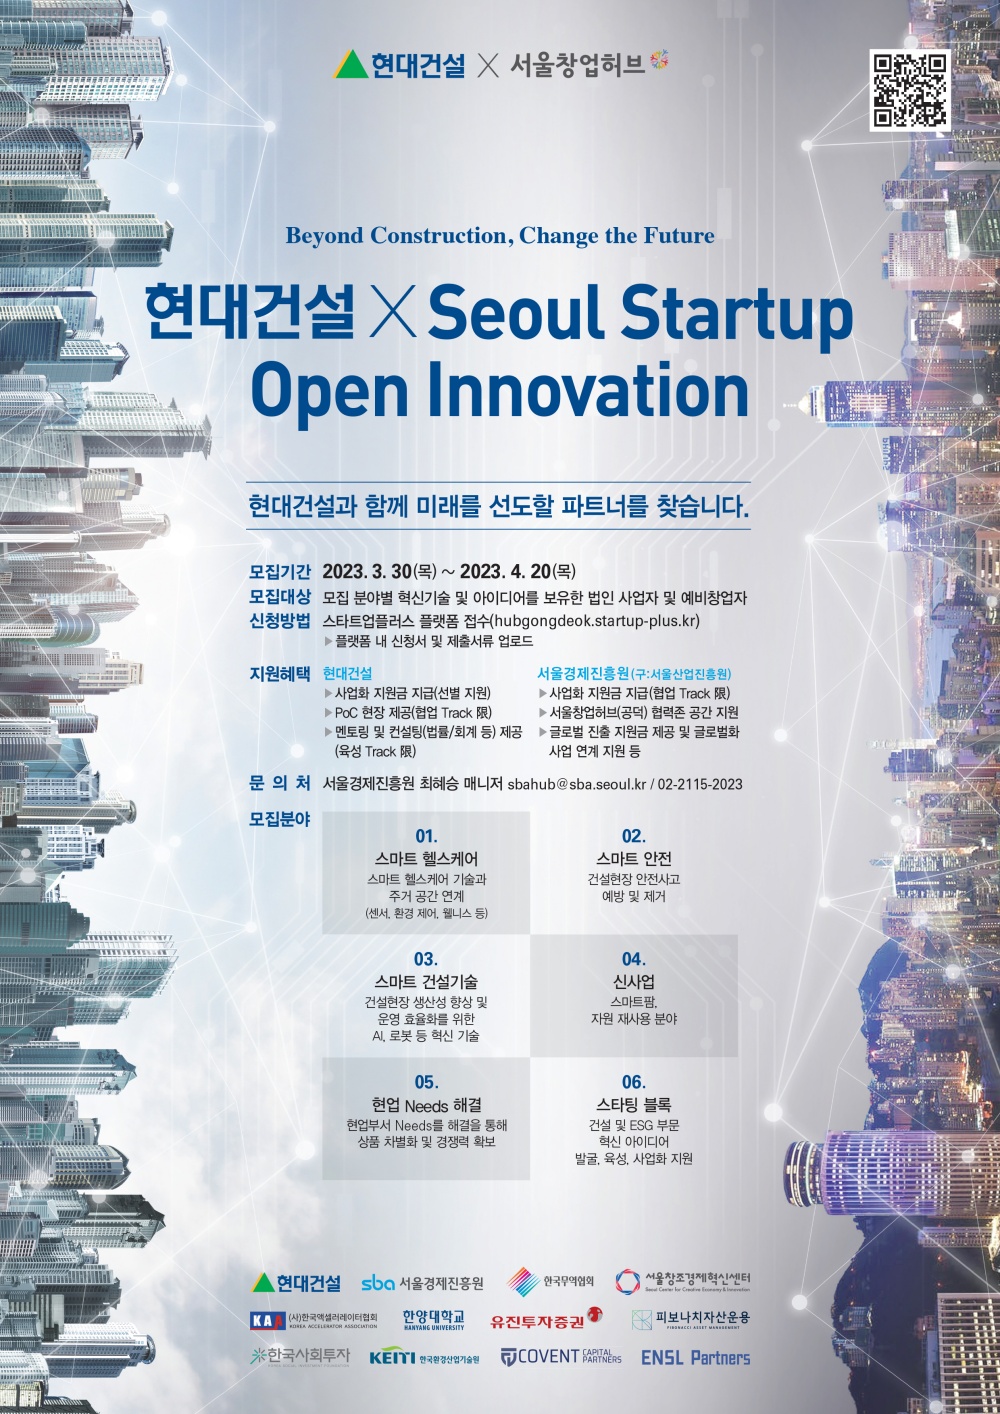 ¡ºÇö´ë°Ç¼³ x Seoul Startup Open Innovation 2023¡» Âü°¡±â¾÷ ¸ðÁý °ø°í Æ÷½ºÅÍ.jpg